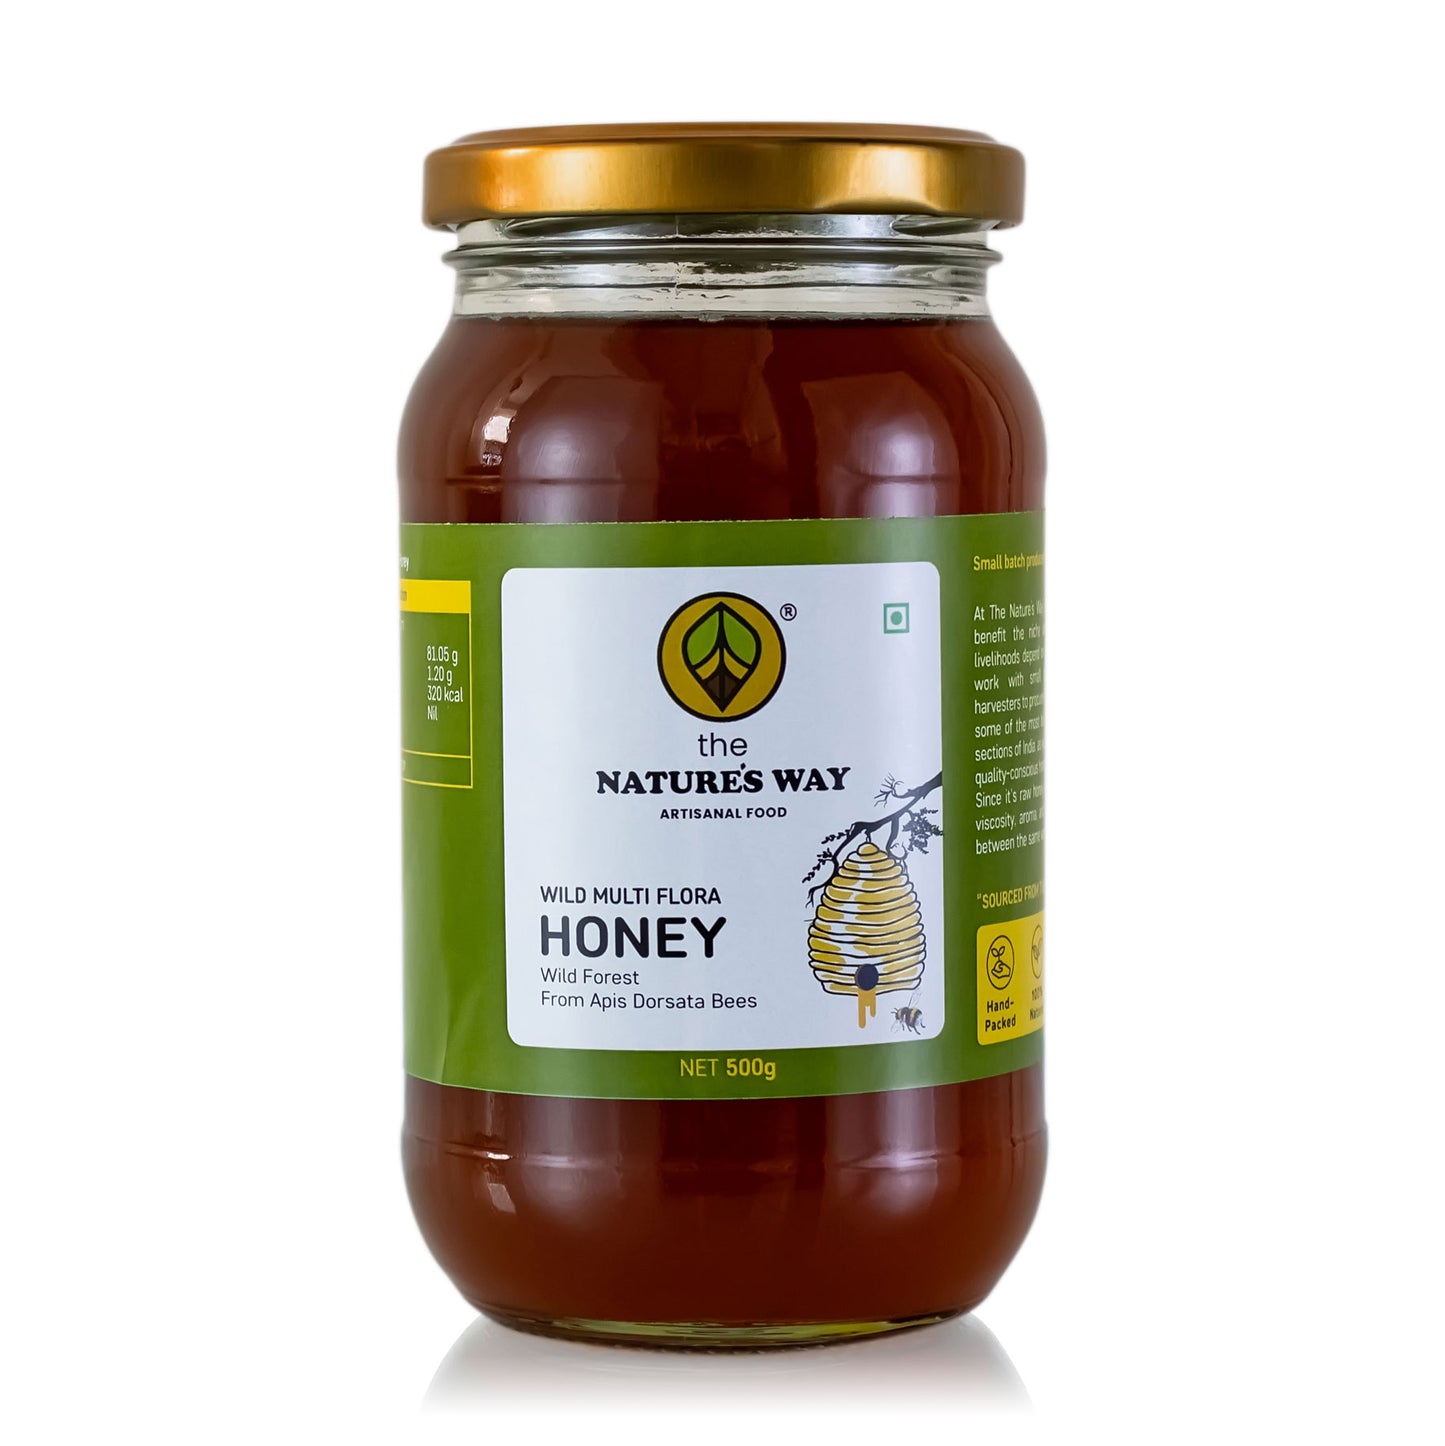 The Natures Way Organic Multi Wild Honey